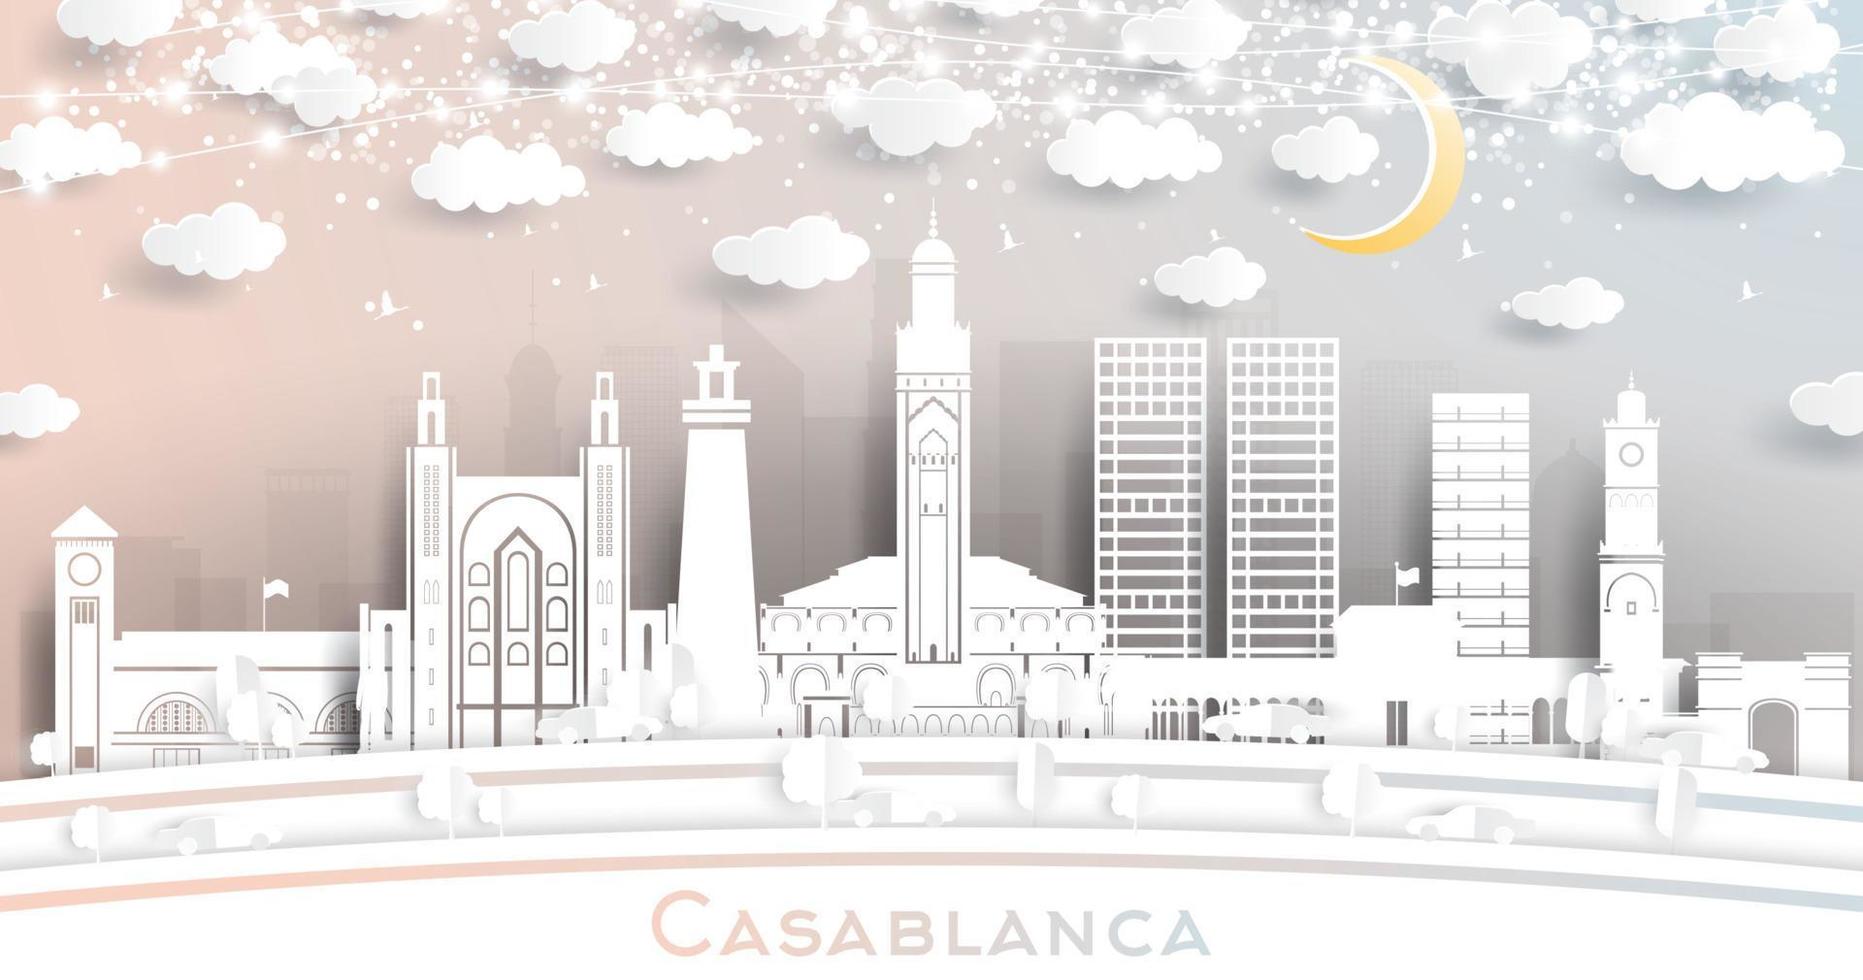 casablanca marokko stadtskyline im papierschnittstil mit weißen gebäuden, mond und neongirlande. vektor